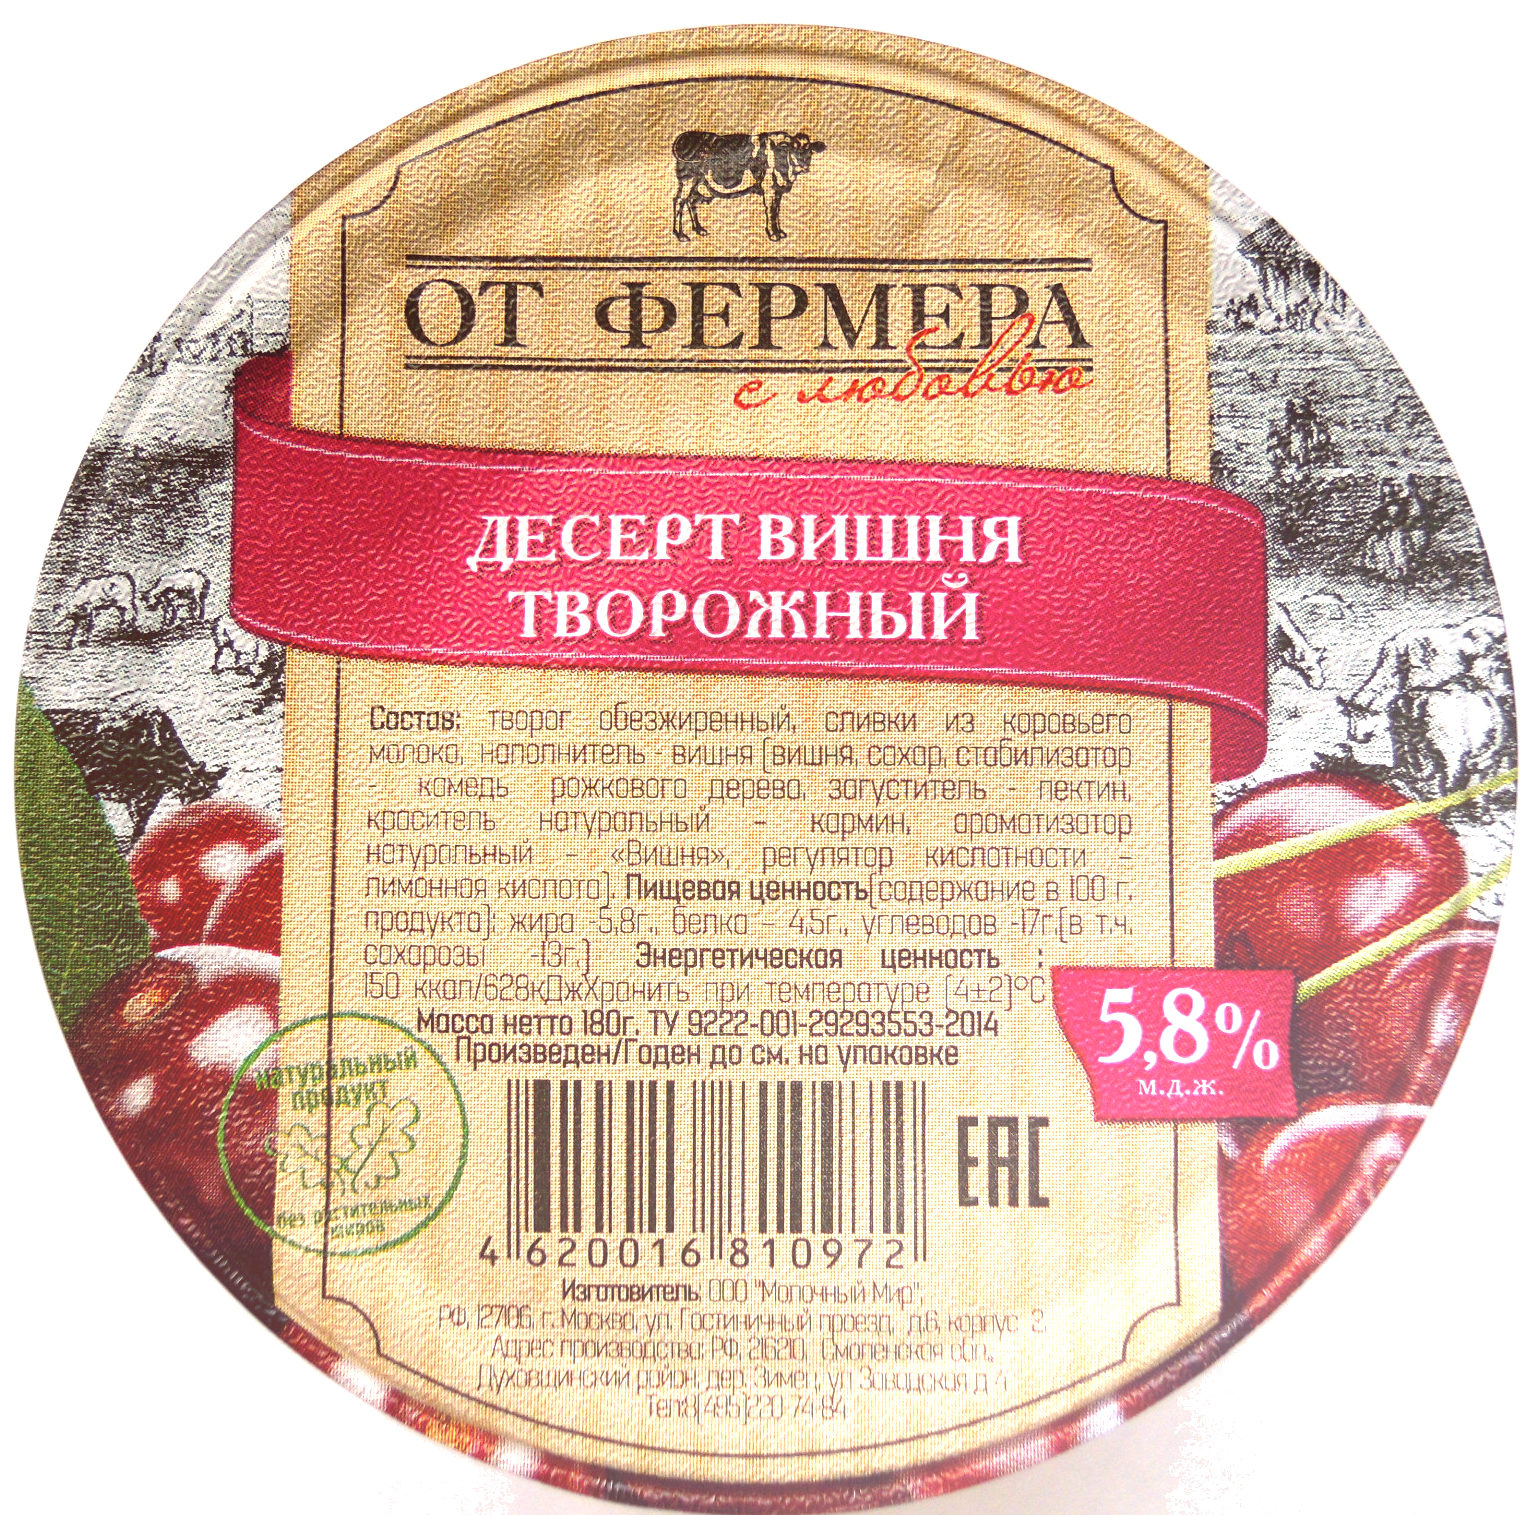 Десерт вишня творожный 5,8 % - Product - ru